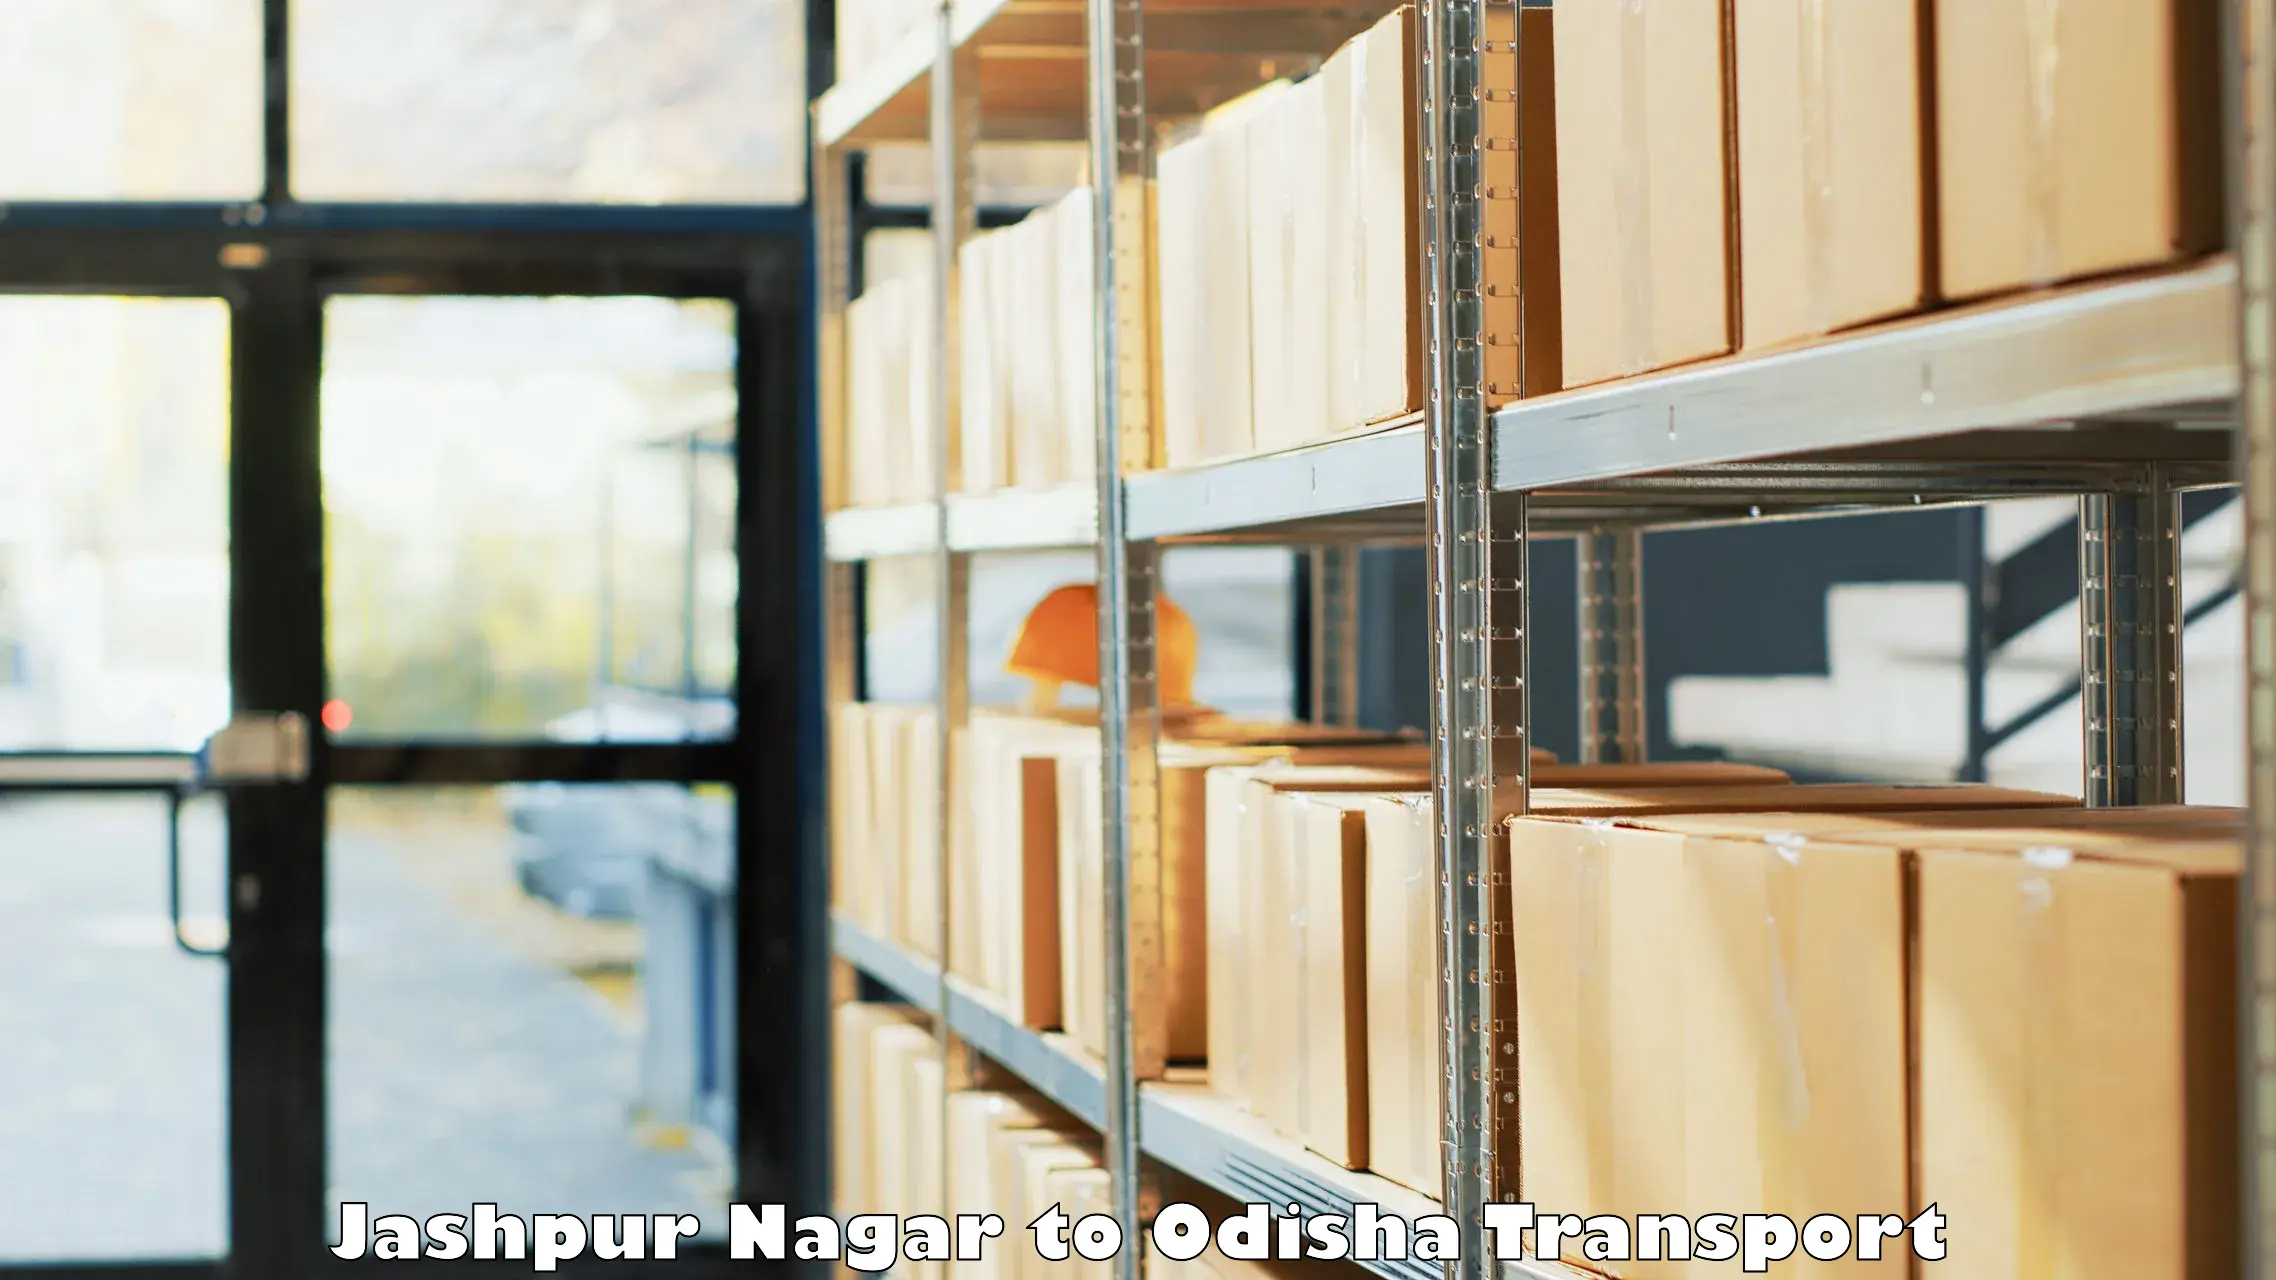 Furniture transport service in Jashpur Nagar to Balasore